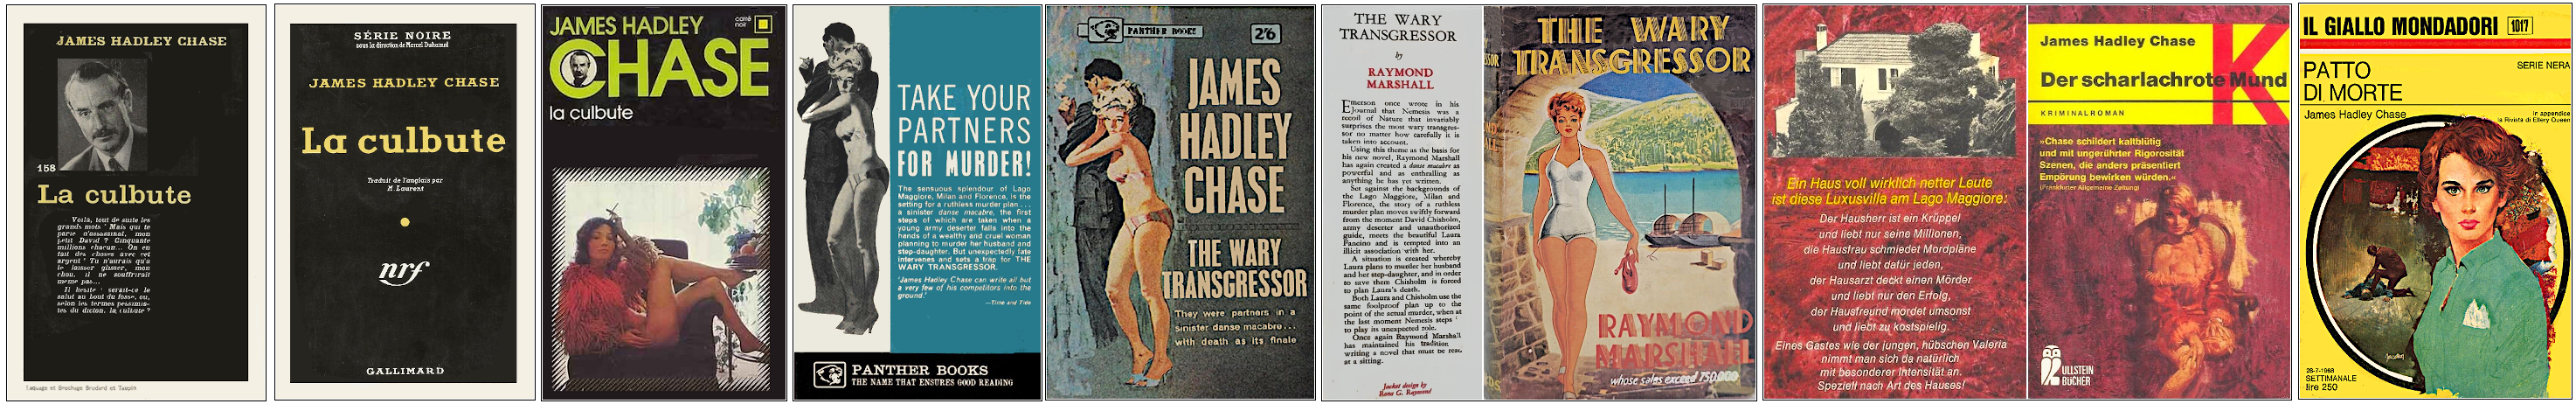 James Hadley Chase - La Culbute  - Éditions Gallimard (Série noire et carré noir), Panther Books, Jarrolds, Ullstein Bücher et Mondadori